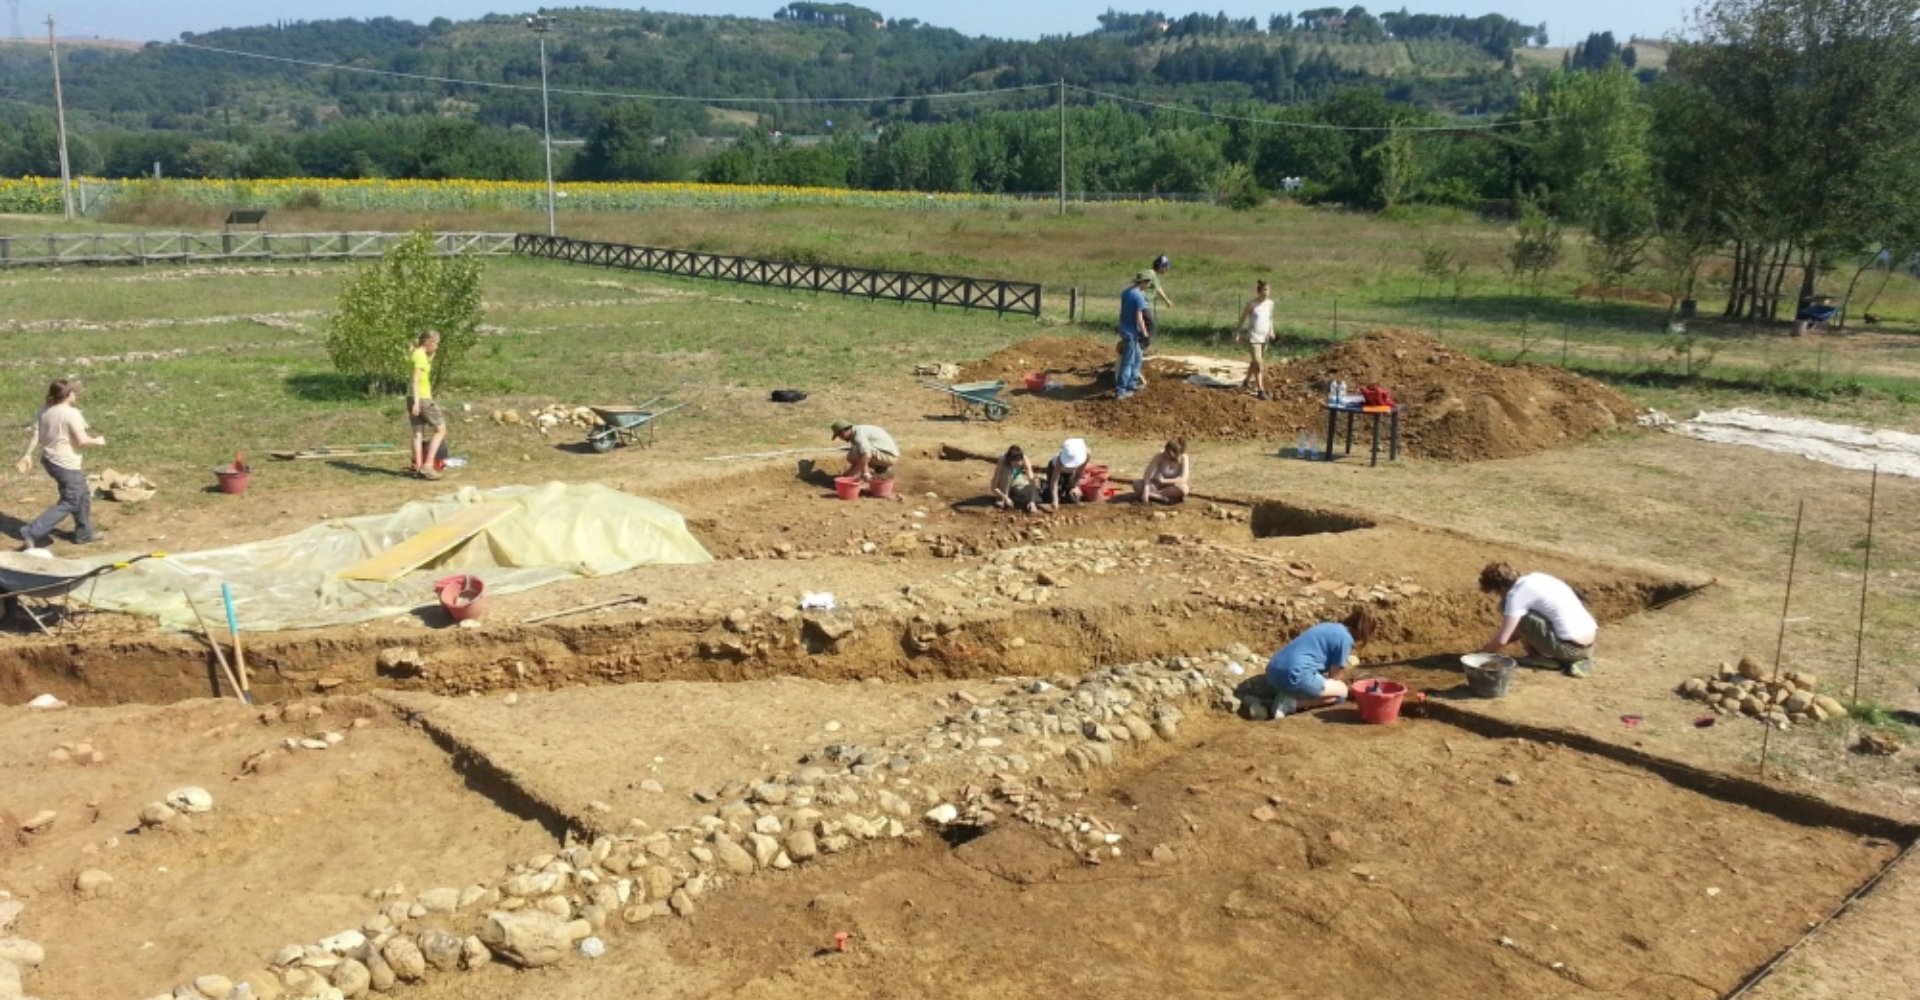 Archäologische Ausgrabungen der römischen Villa in Montelupo Fiorentino